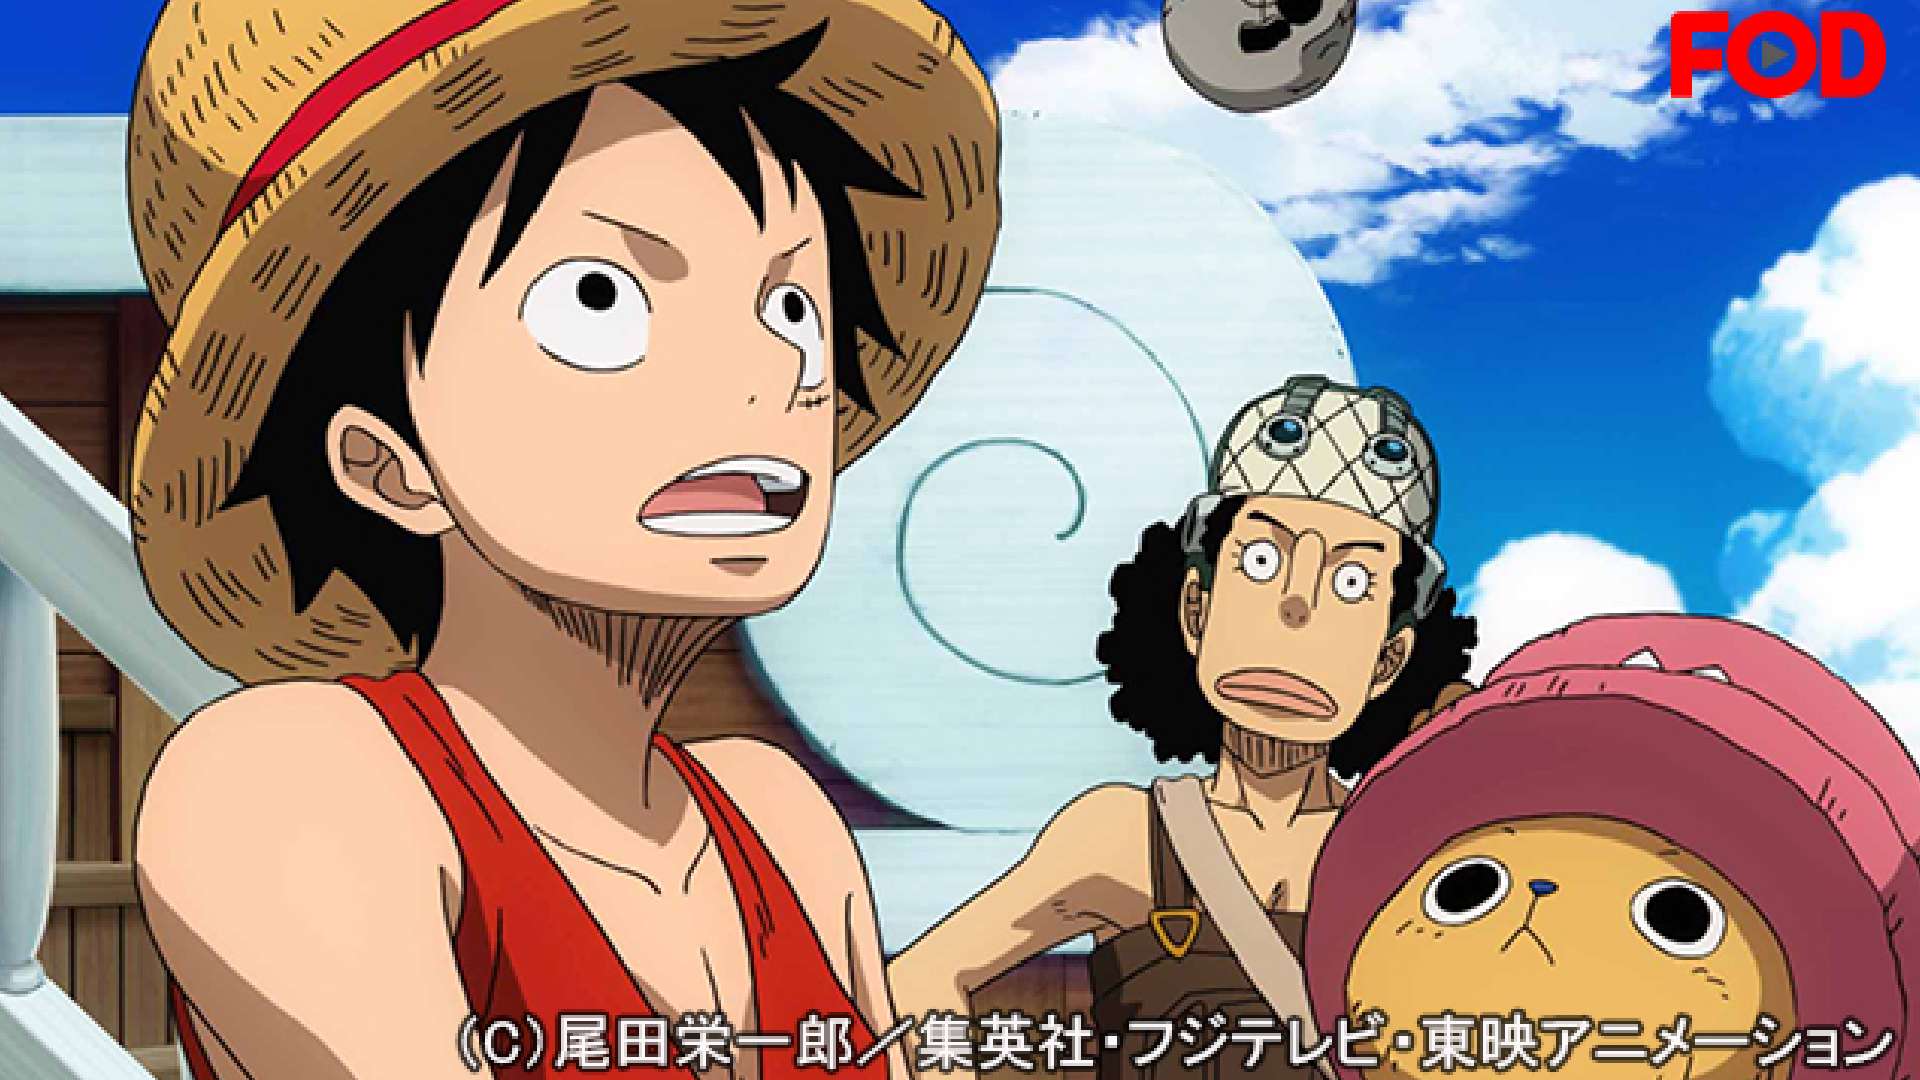 ベスト One Piece エピソードオブ空島 王朝の最高の壁紙cahd